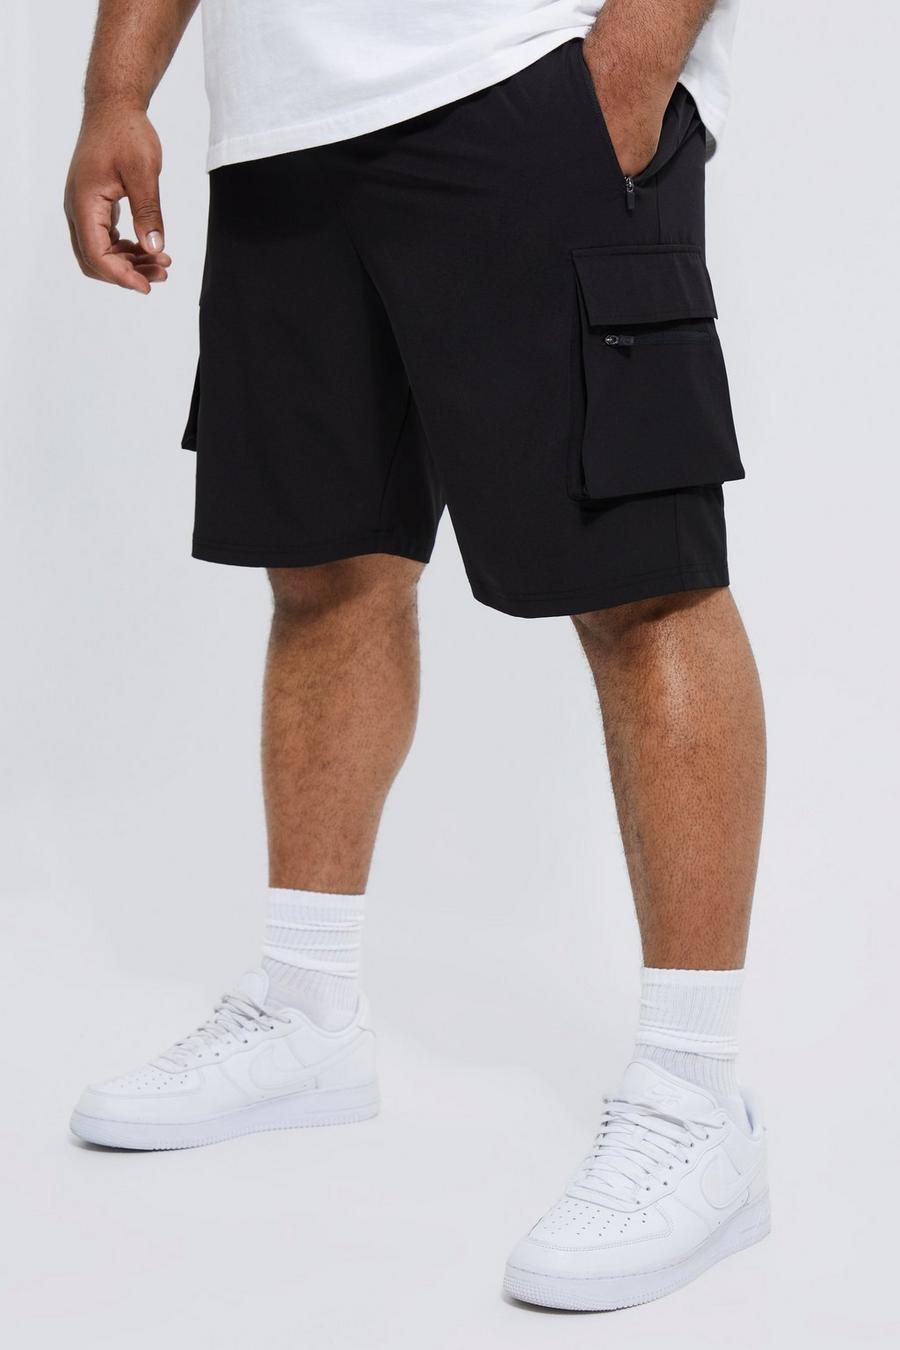 Pantalón corto Plus cargo elástico en 4 direcciones con cintura elástica, Black